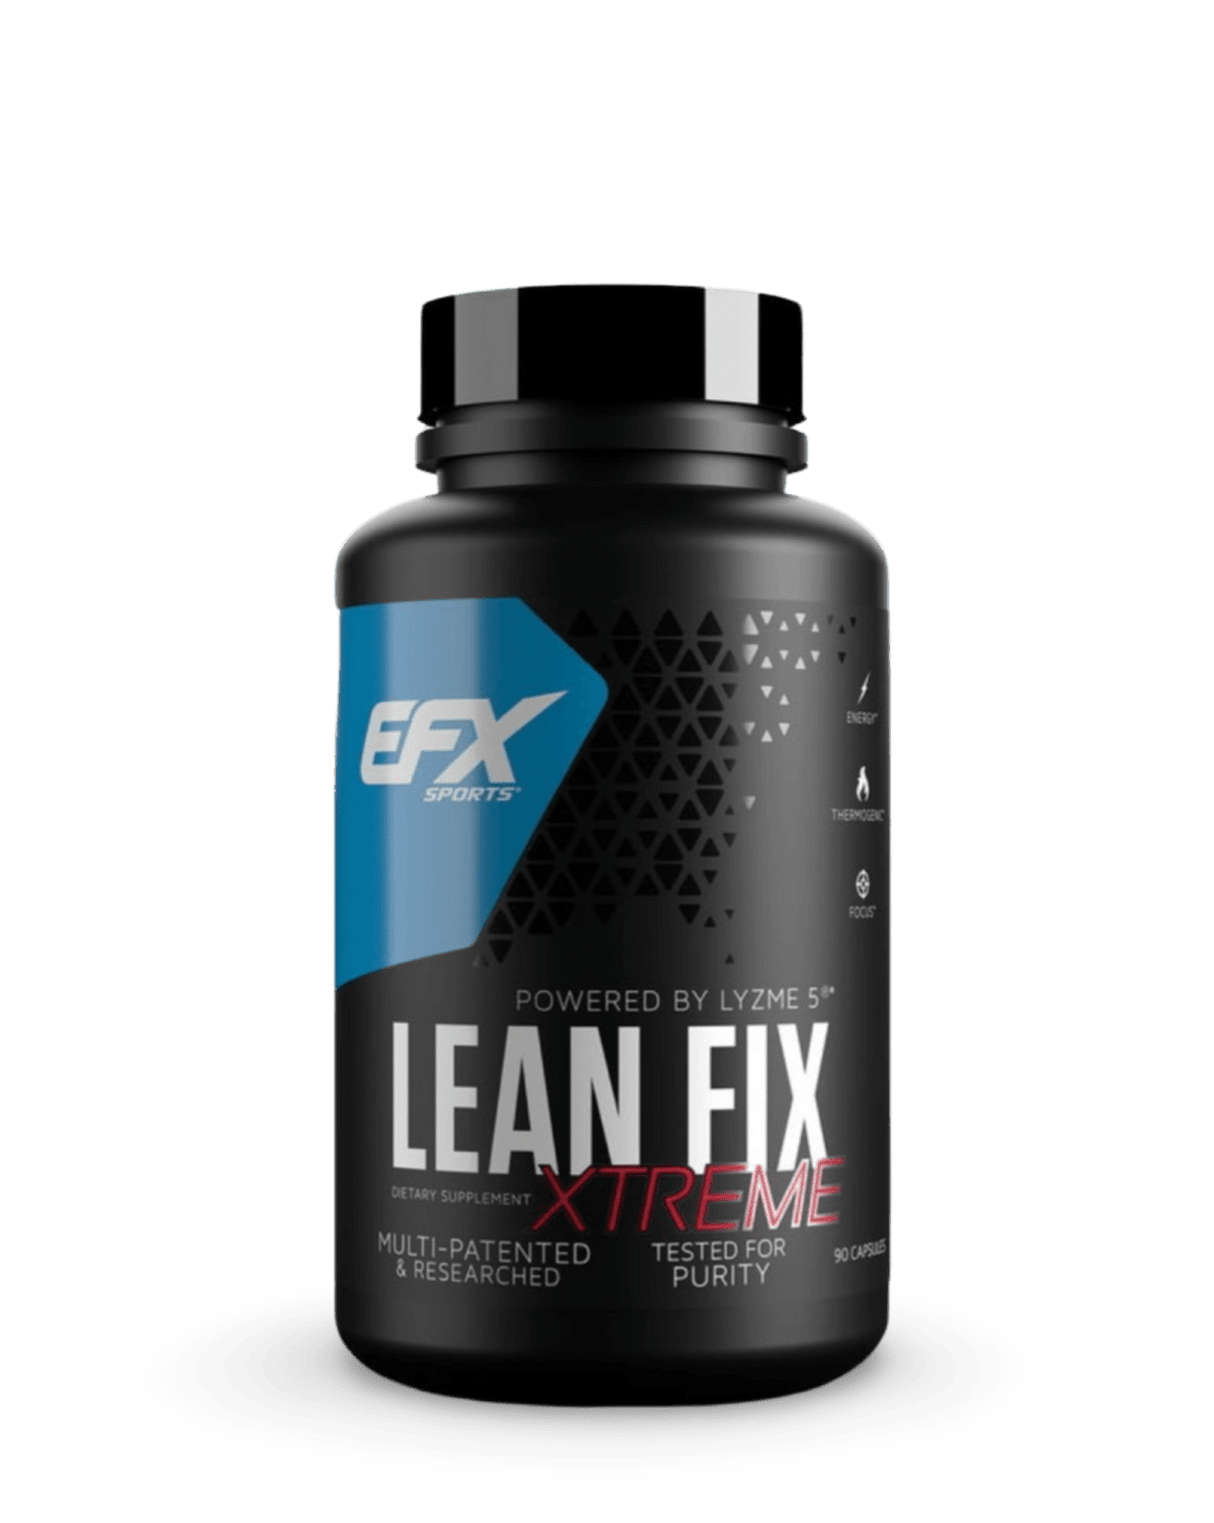 LEAN FIX XTREME - EFX - Prime Sports Nutrition